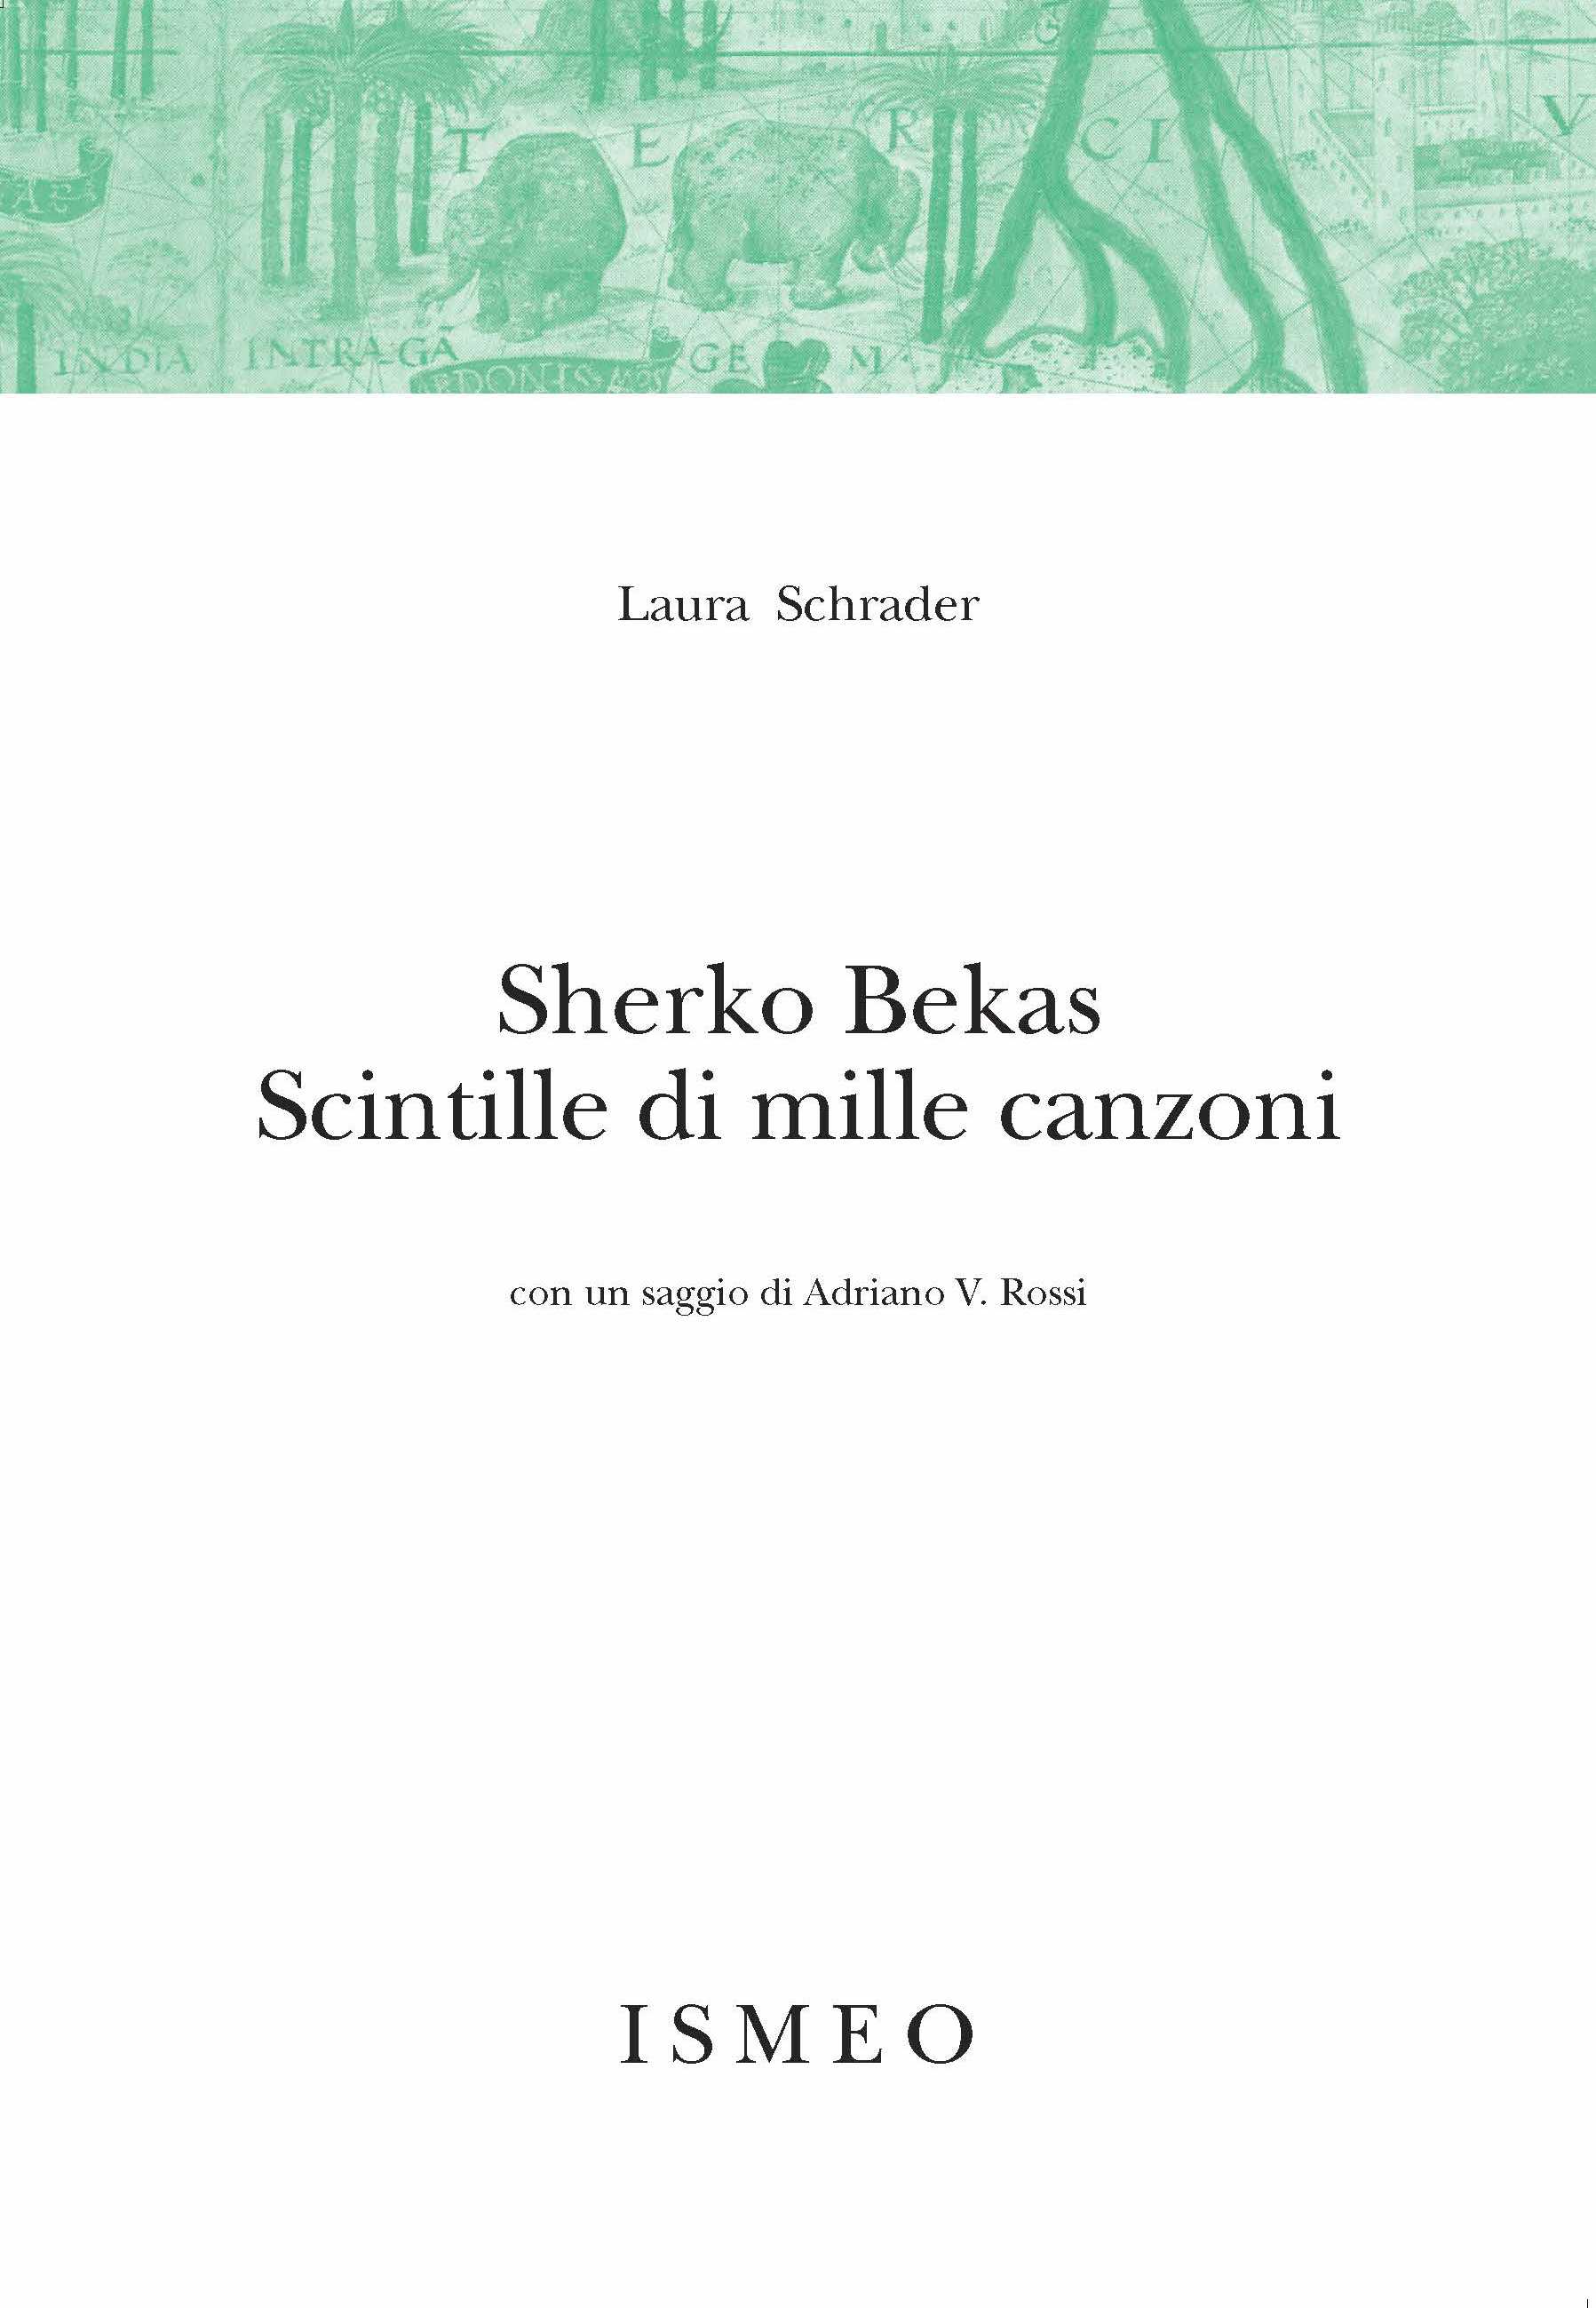 Sherko Bekas<br/>
Scintille di mille canzoni<br/>
con un saggio di Adriano V. Rossi
- Novissimo Ramusio 4